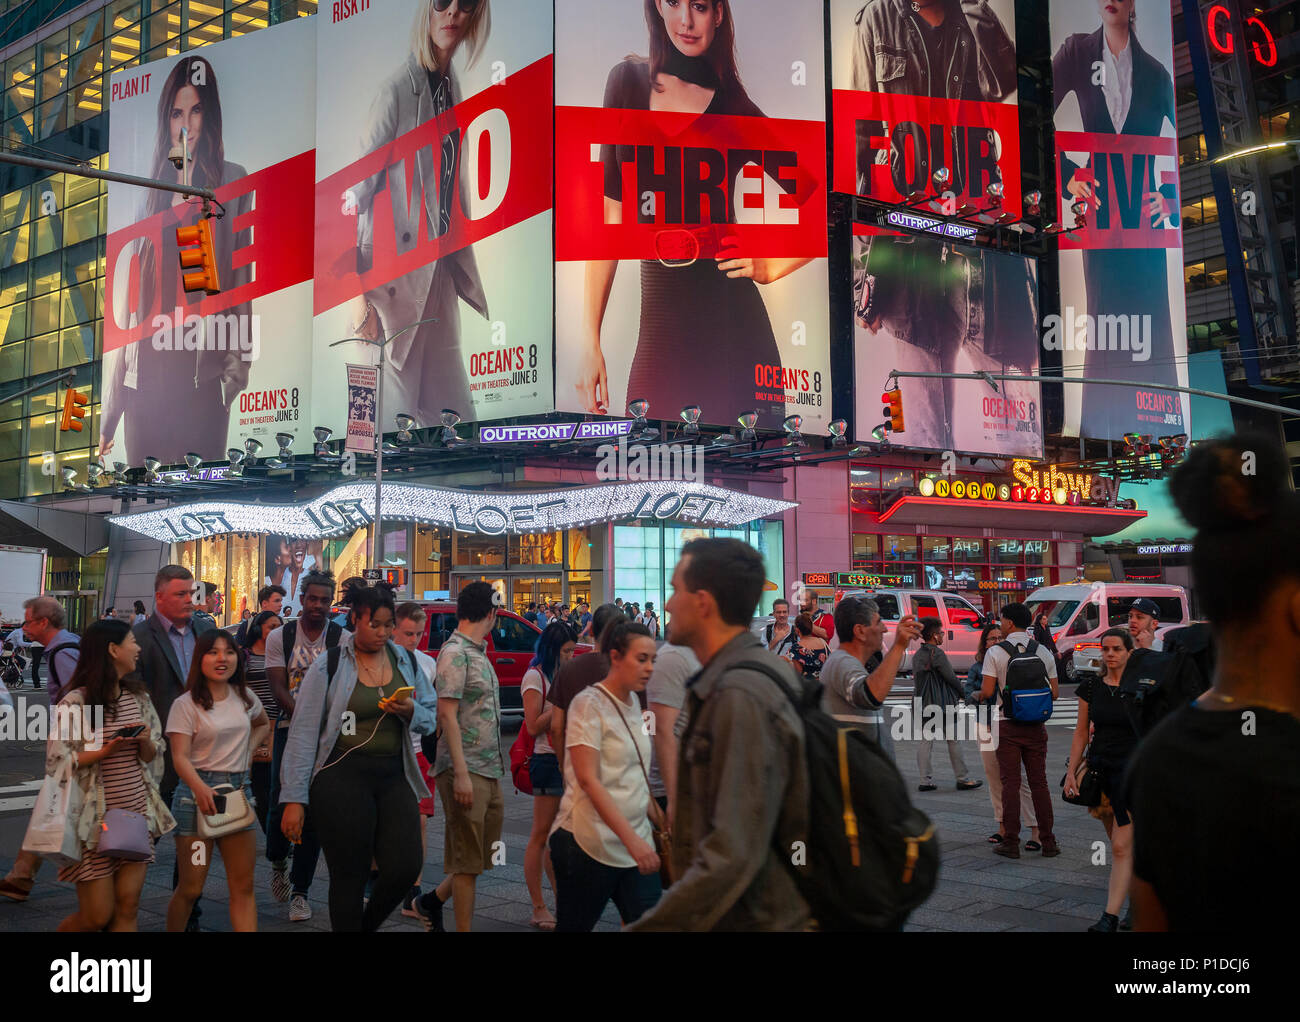 Werbung für die Warner Bros' Film "Ocean's 8' Film im Times Square in New York am Dienstag, 29. Mai 2018 zu sehen ist. Der Film ist ein Spin-off von Franchise des Ozeans und wird festgelegt, den Theatern am 8. Juni zu schlagen. (© Richard B. Levine) Stockfoto